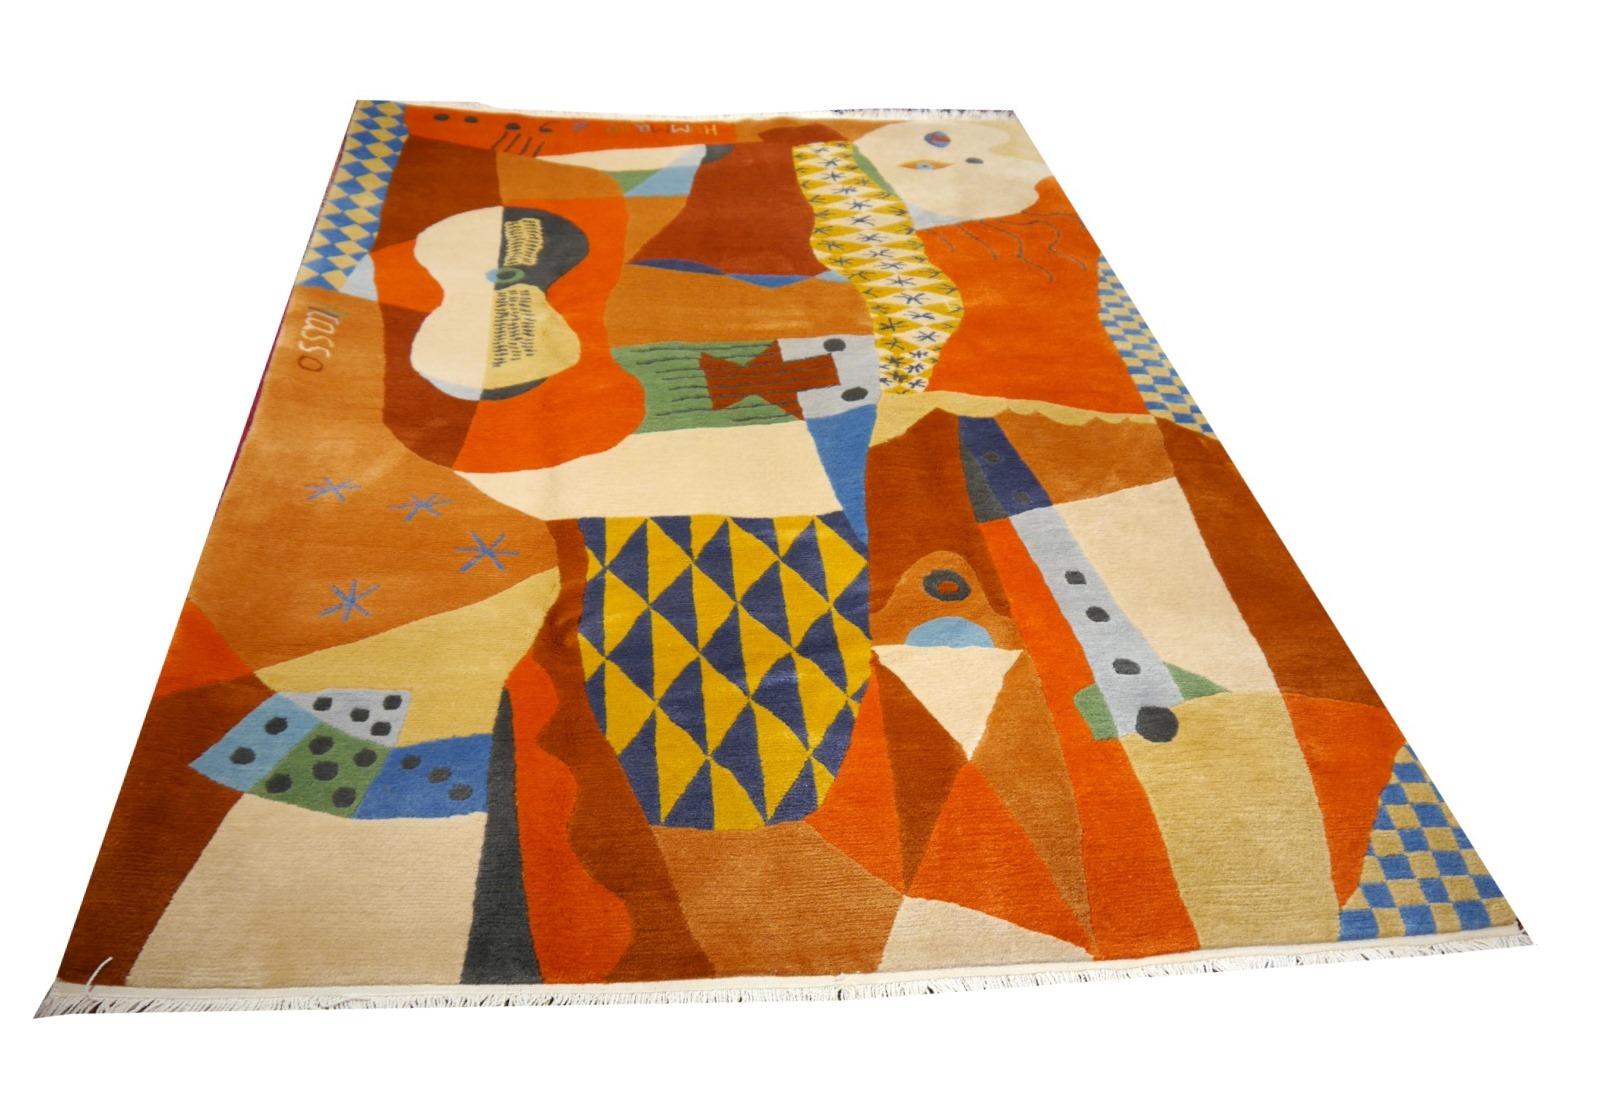 Ein wunderschöner Vintage-Design-Teppich von ART LINE, handgeknüpft aus feinster tibetischer Wolle, 300 x 200 cm, Design nach Pablo Picasso

Der Kubismus ist eine Stilrichtung der Kunstgeschichte, die sich um 1906 in Frankreich aus der Avantgarde